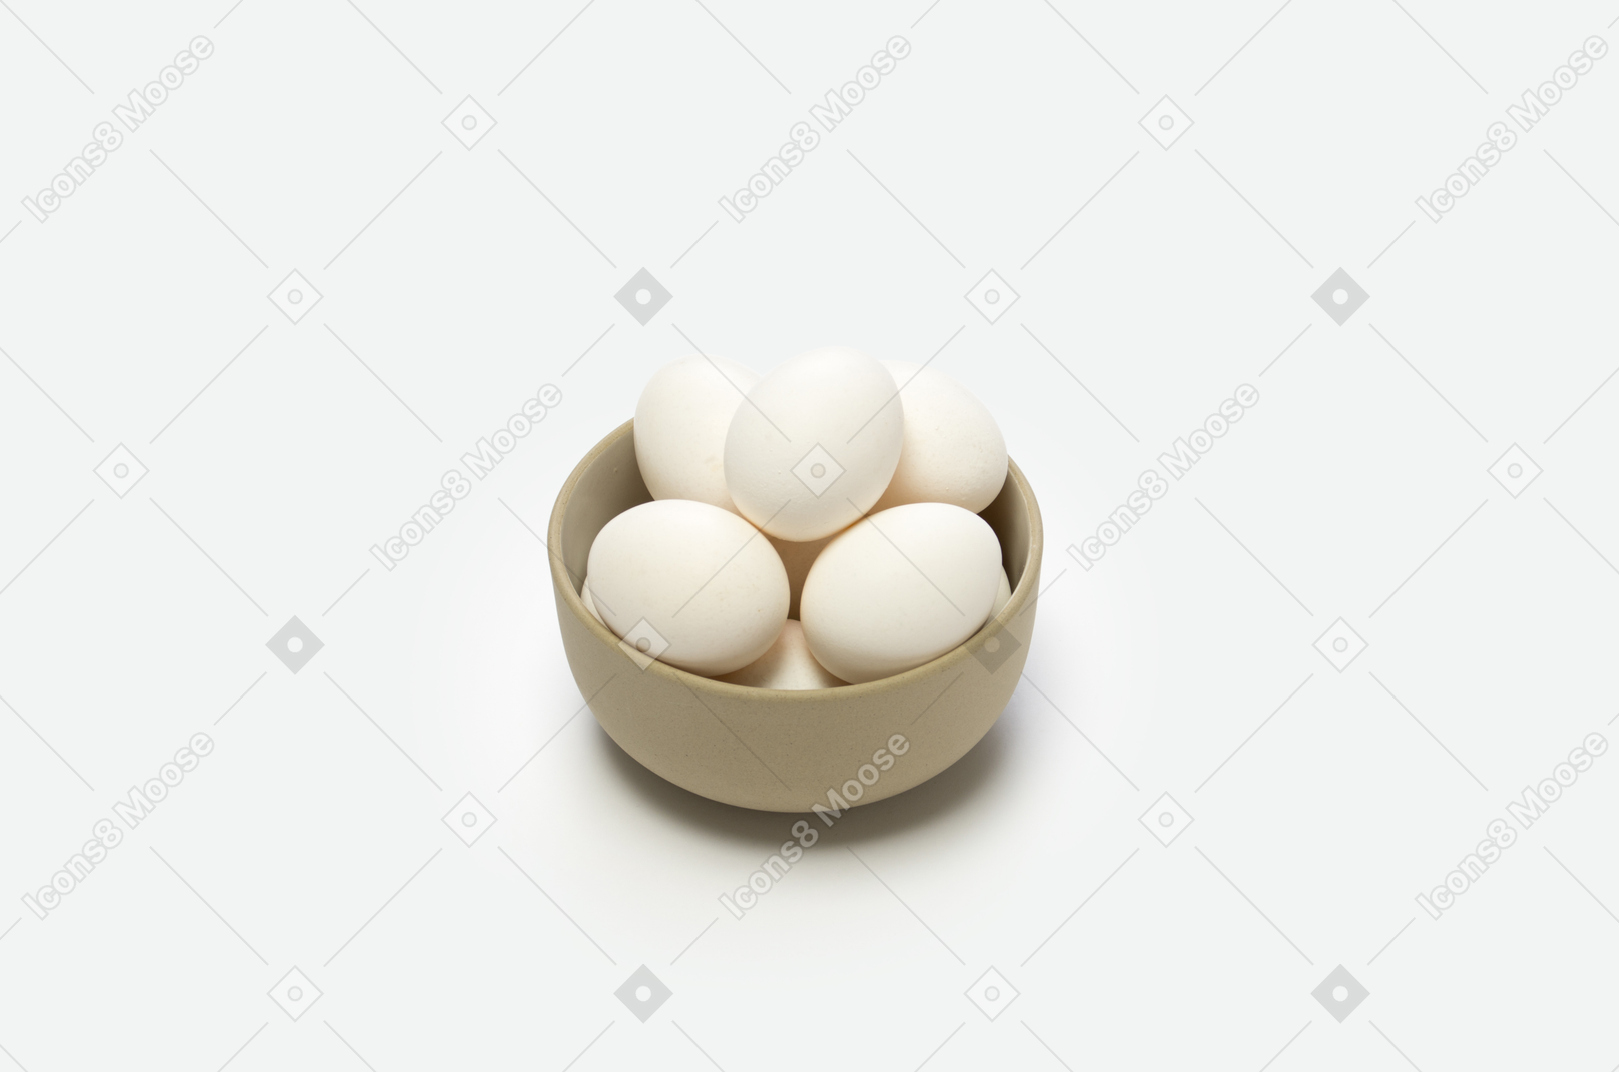 Los huevos son una muy buena fuente de proteínas.